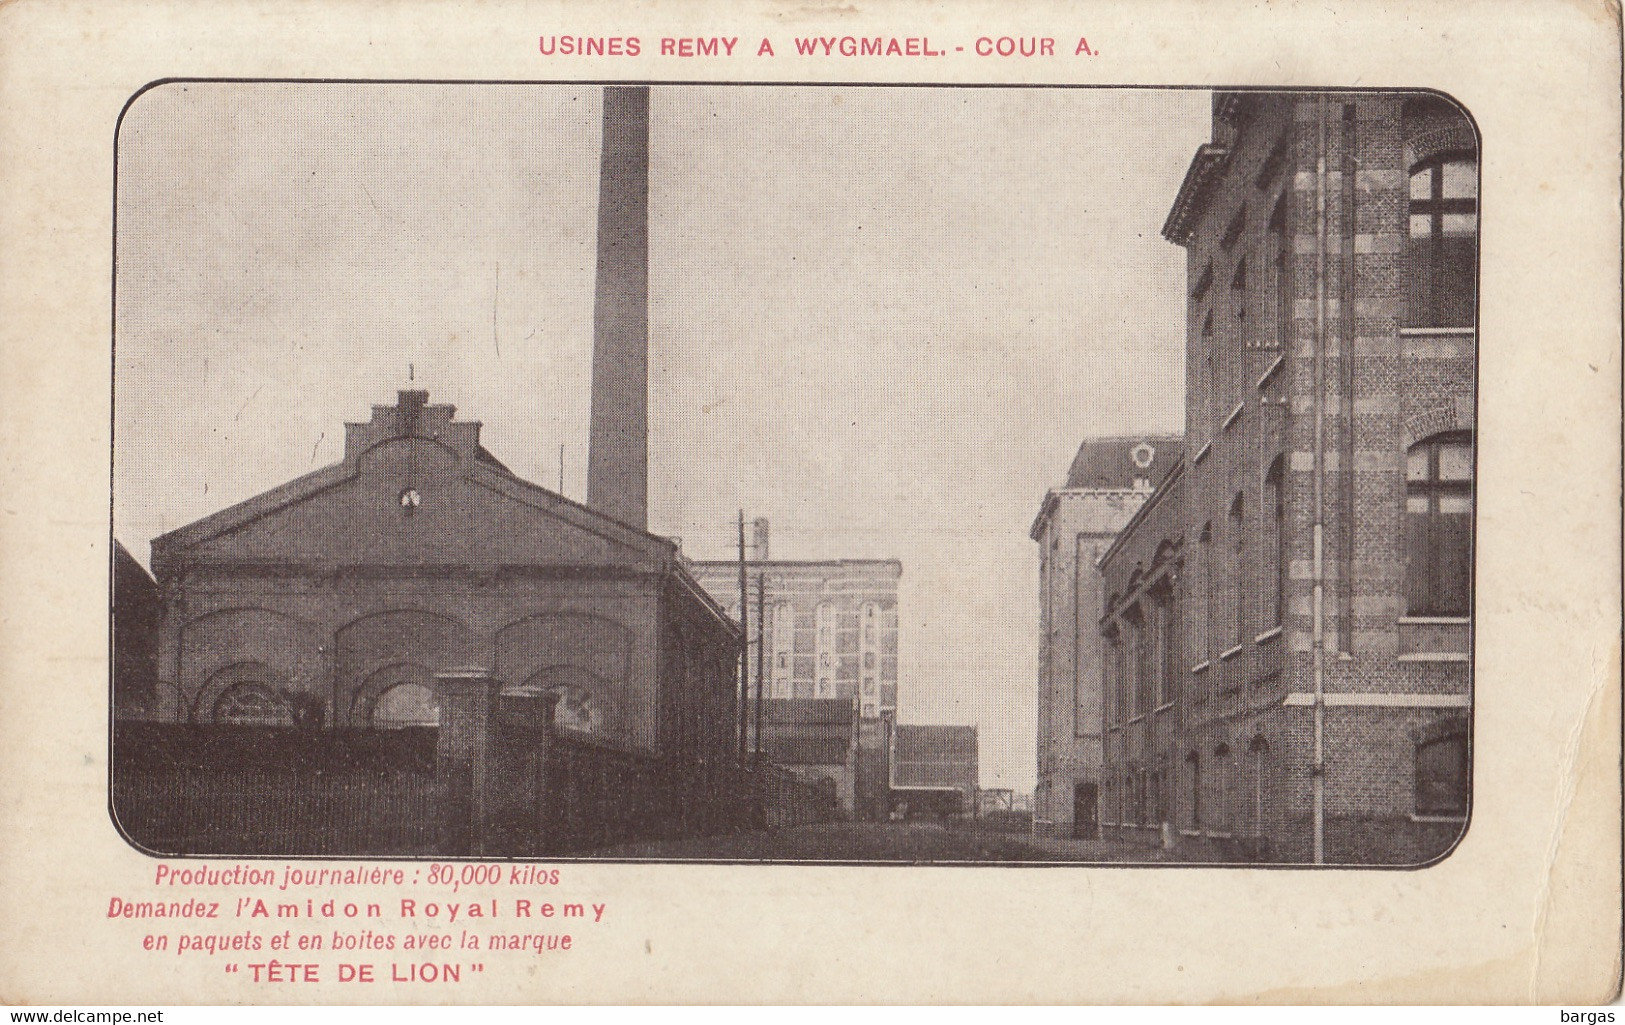 Carte Postale Usine Remy à Wygmael Cour A - Leuven